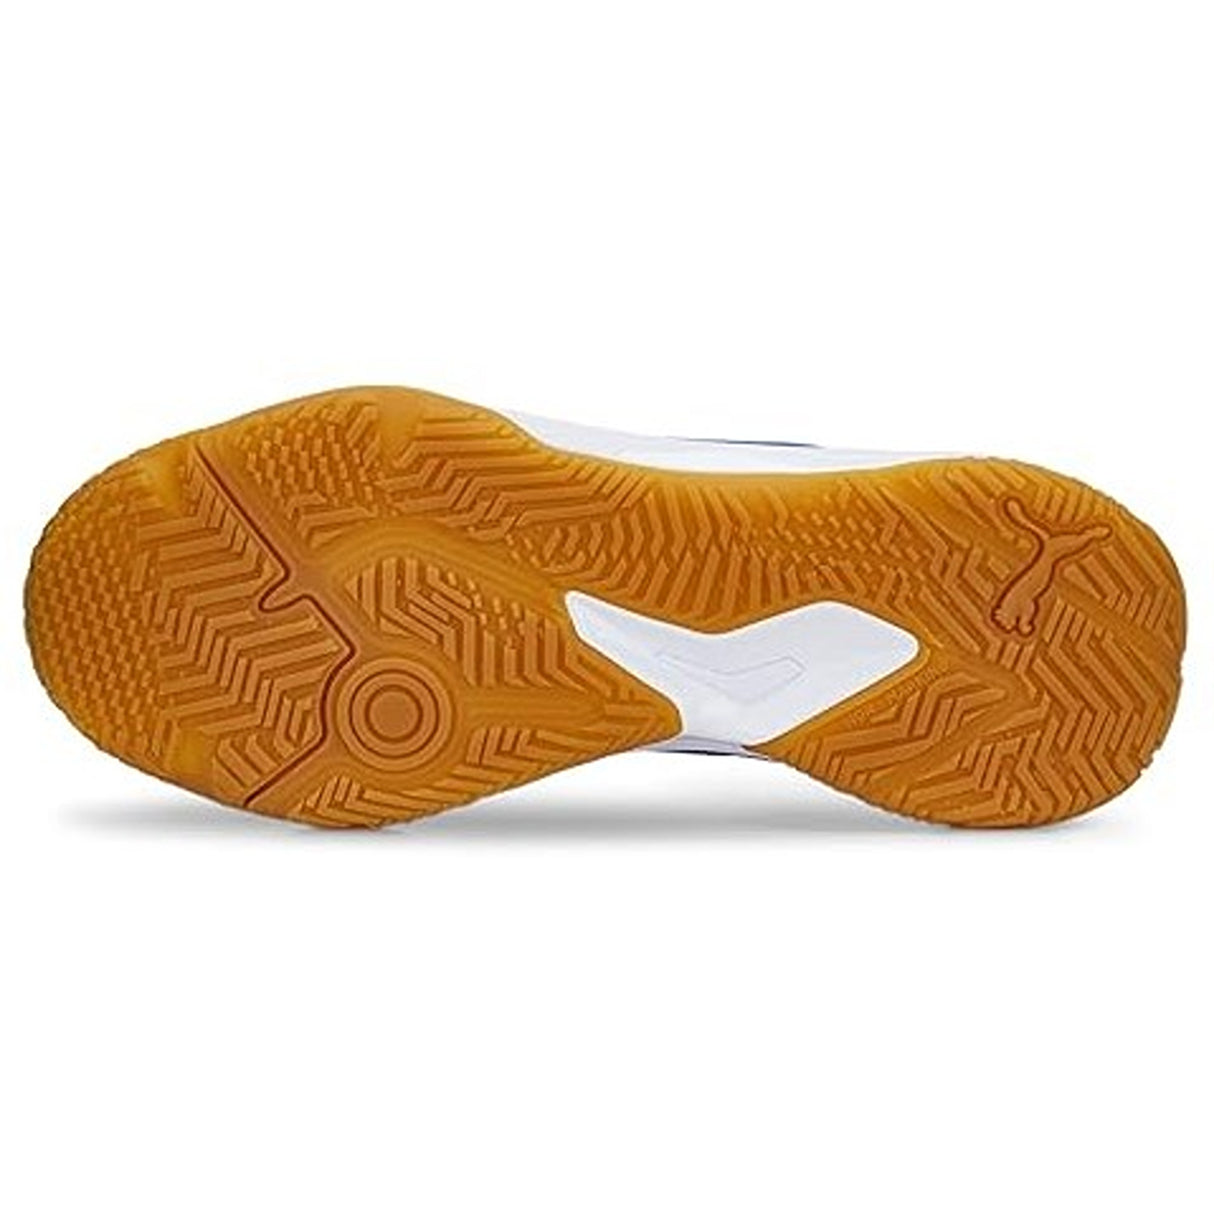 Puma Unisex-Adult Solarflash Ii Indoor Court Shoe (10688203)